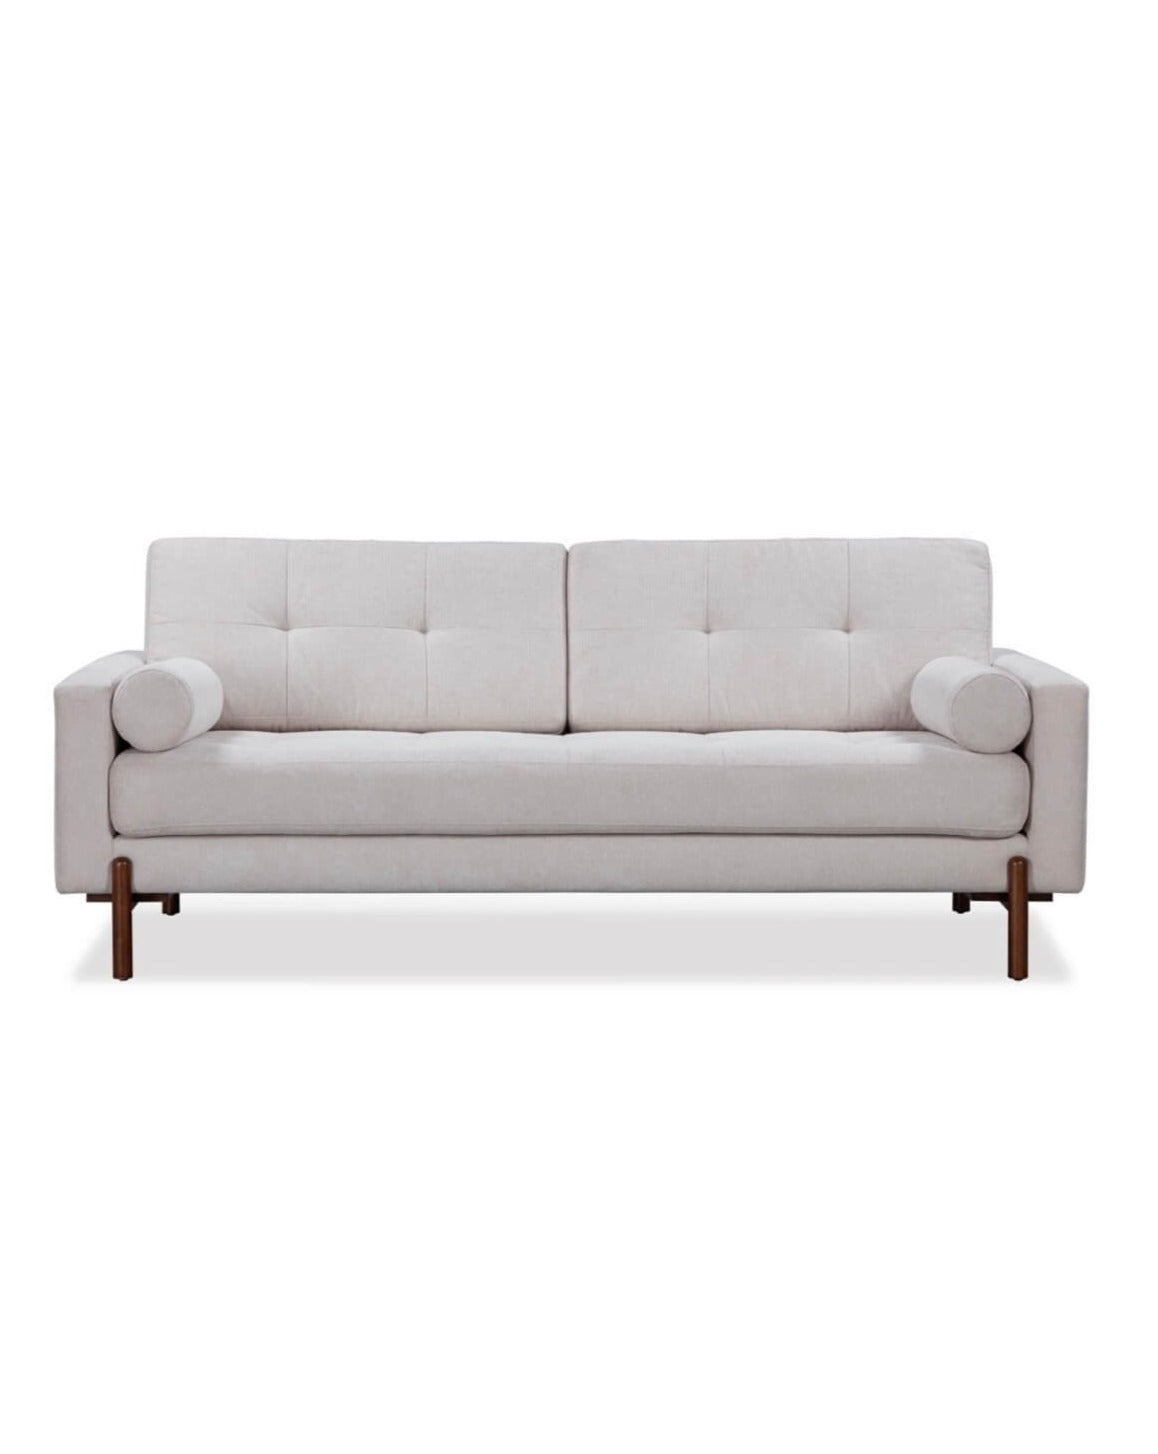 Neutral Textured Fabric Sofa